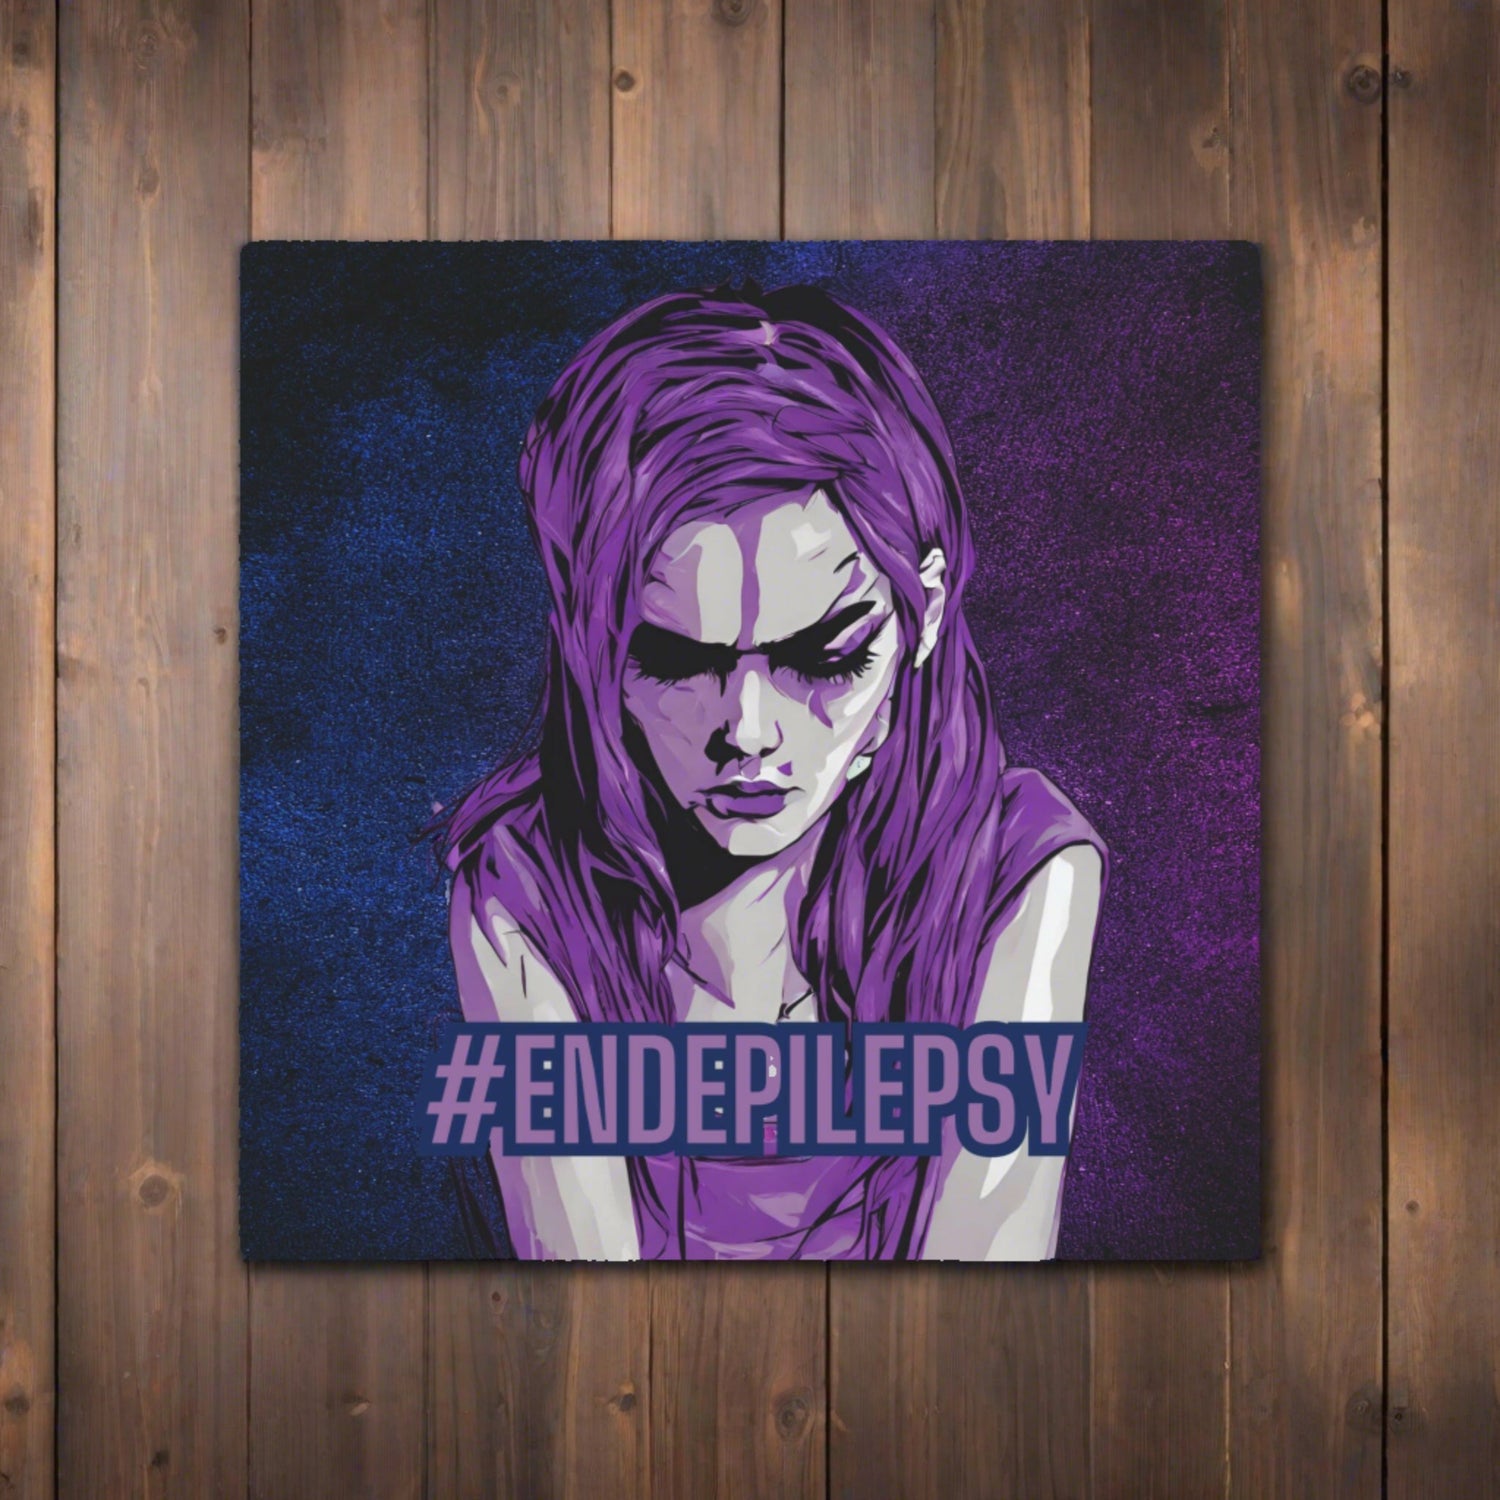 Epilepsy Awareness Merchandise